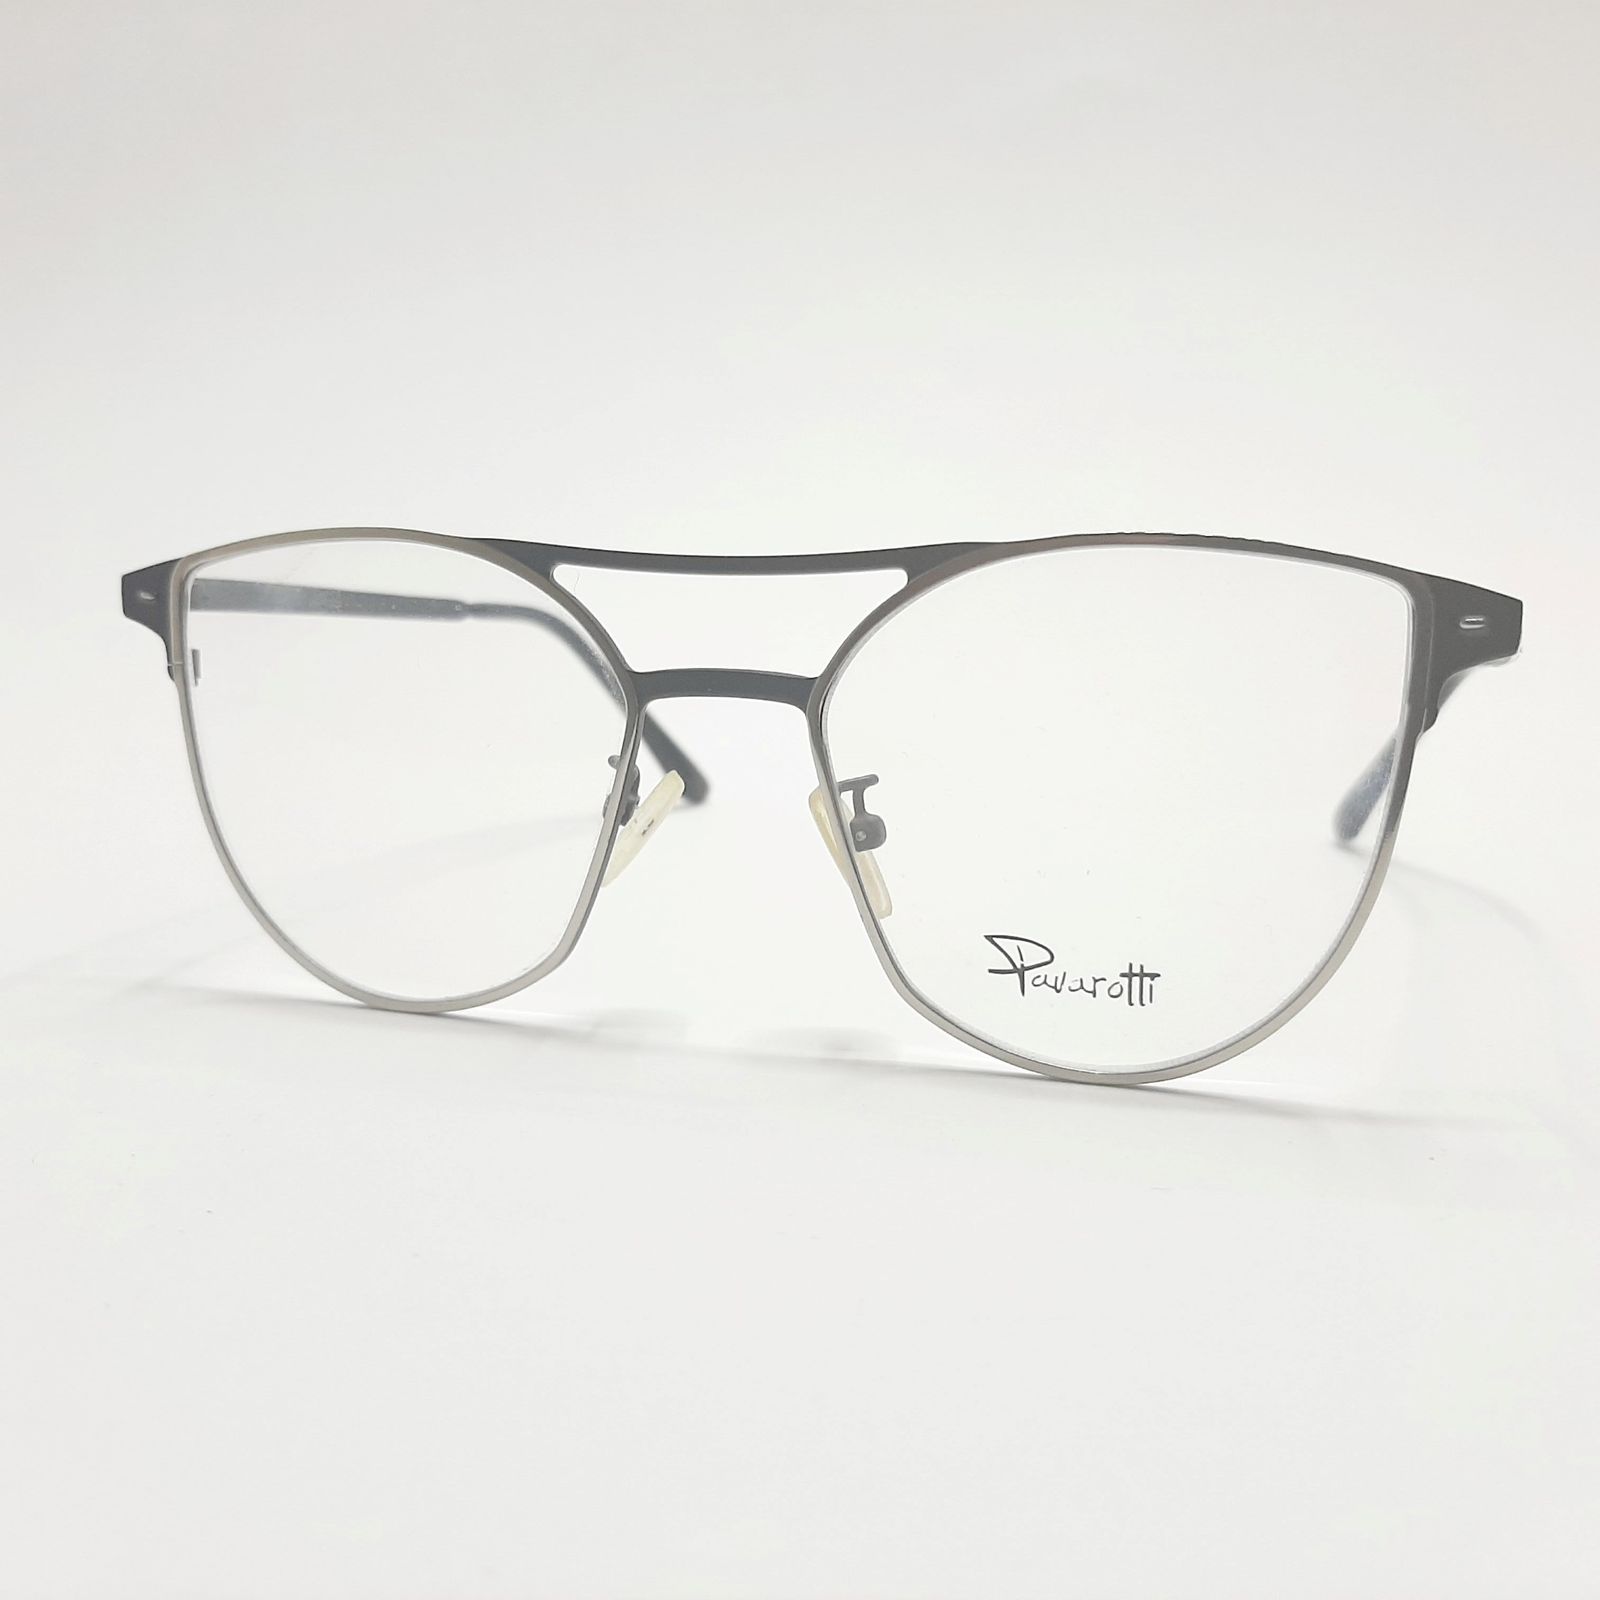 فریم عینک طبی پاواروتی مدل P82001c4 -  - 3